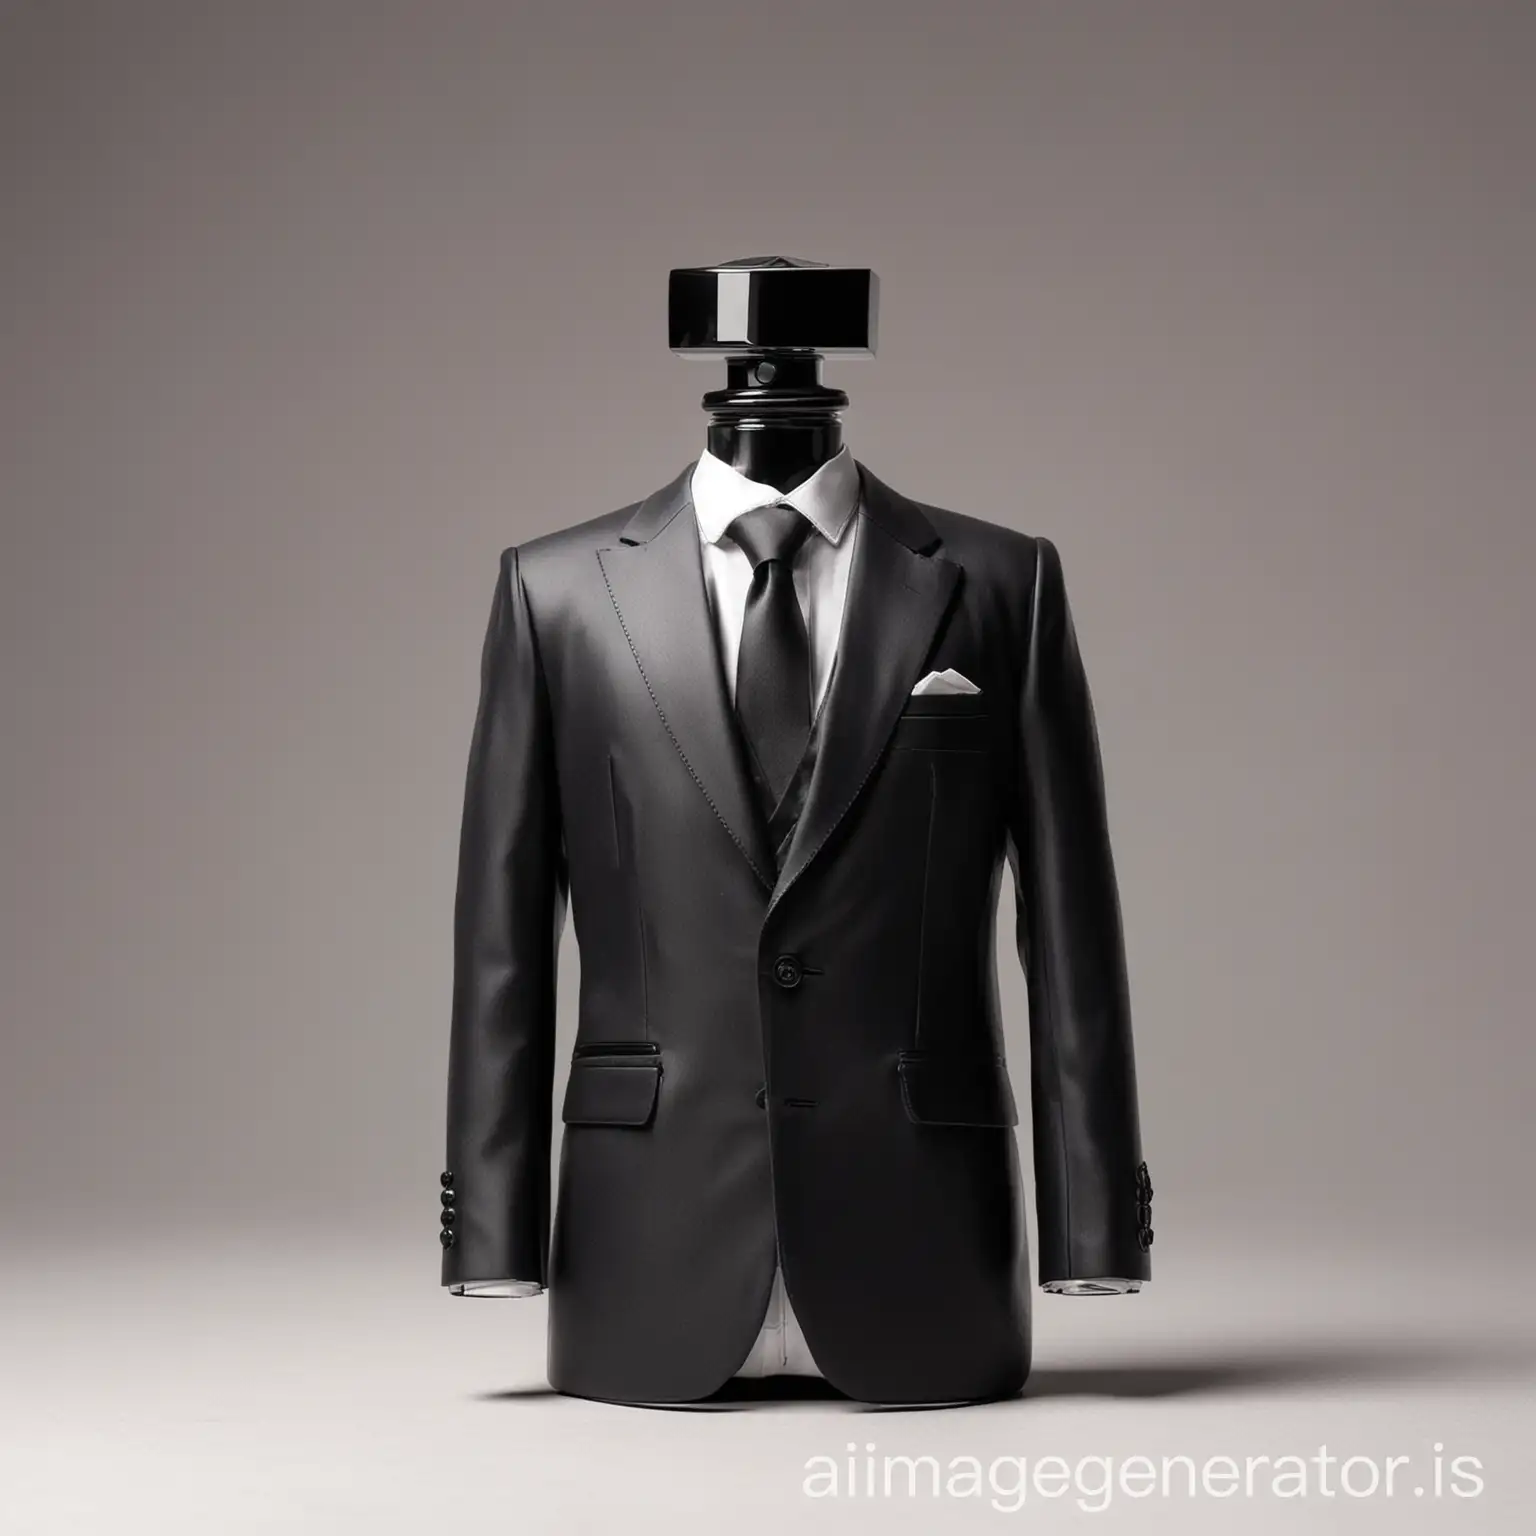 Man-in-Suit-Shaped-like-Perfume-Bottle